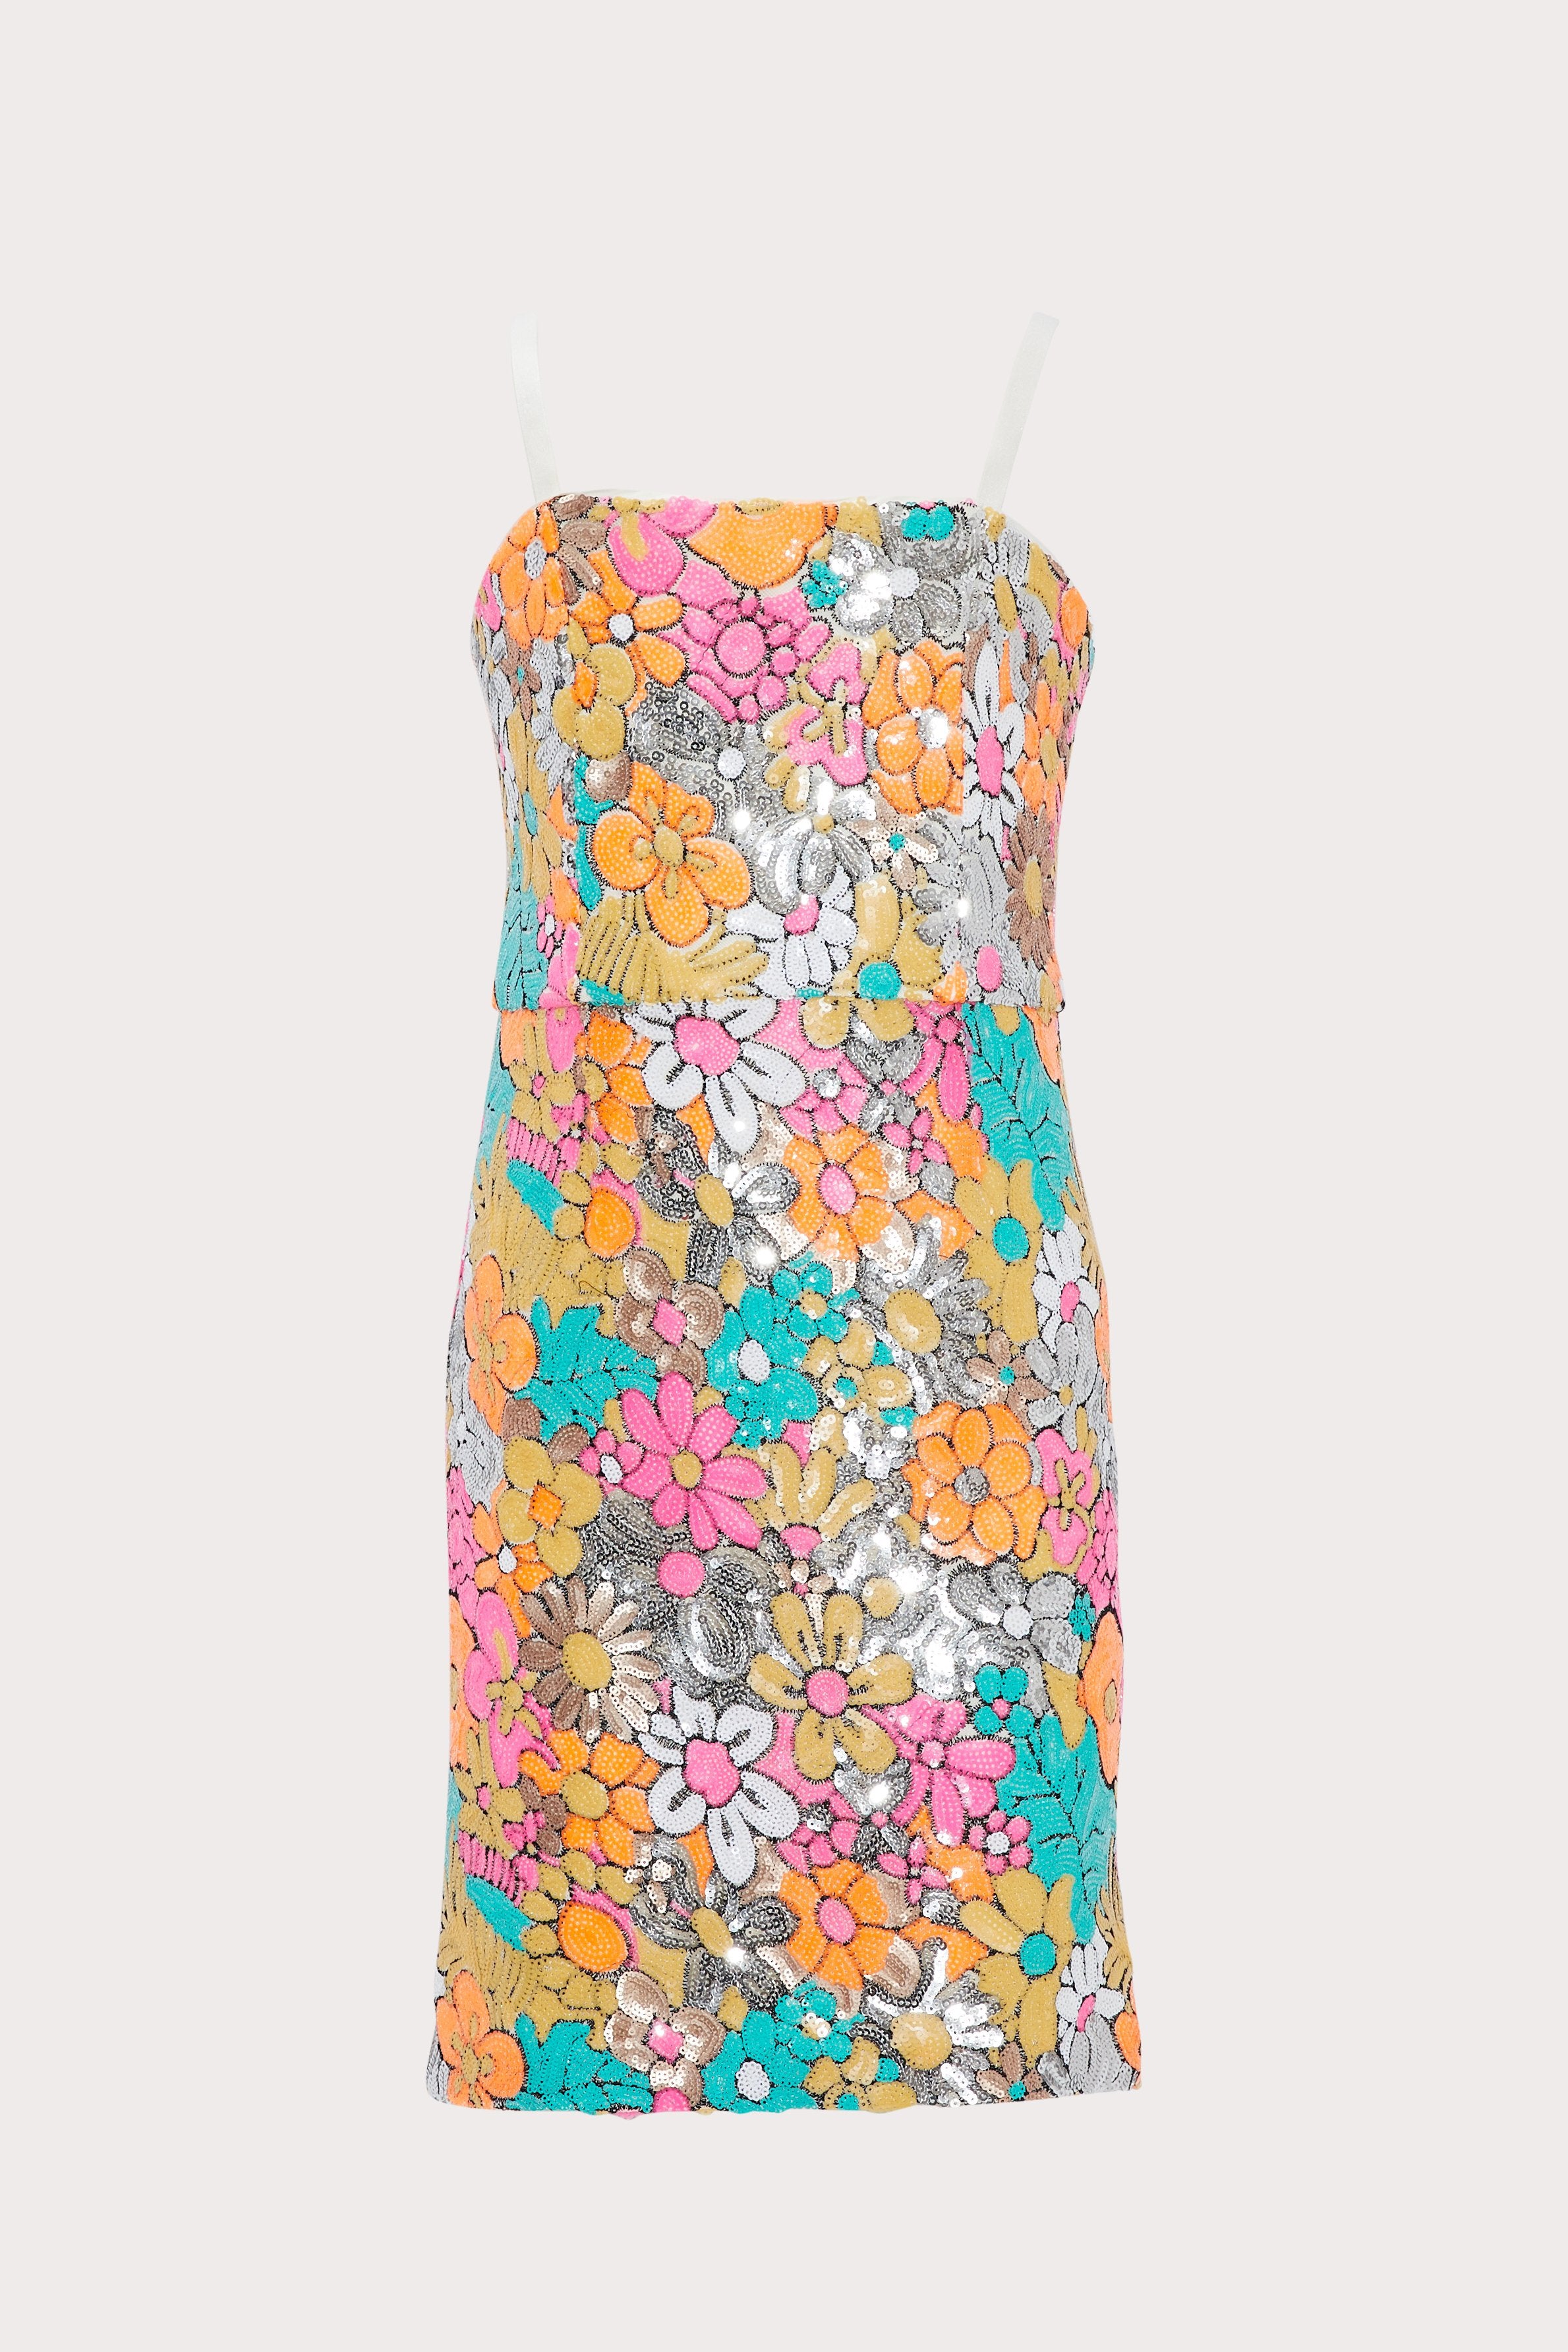 Trendsi Holographic Sequin Mini Dress Multicolor / L